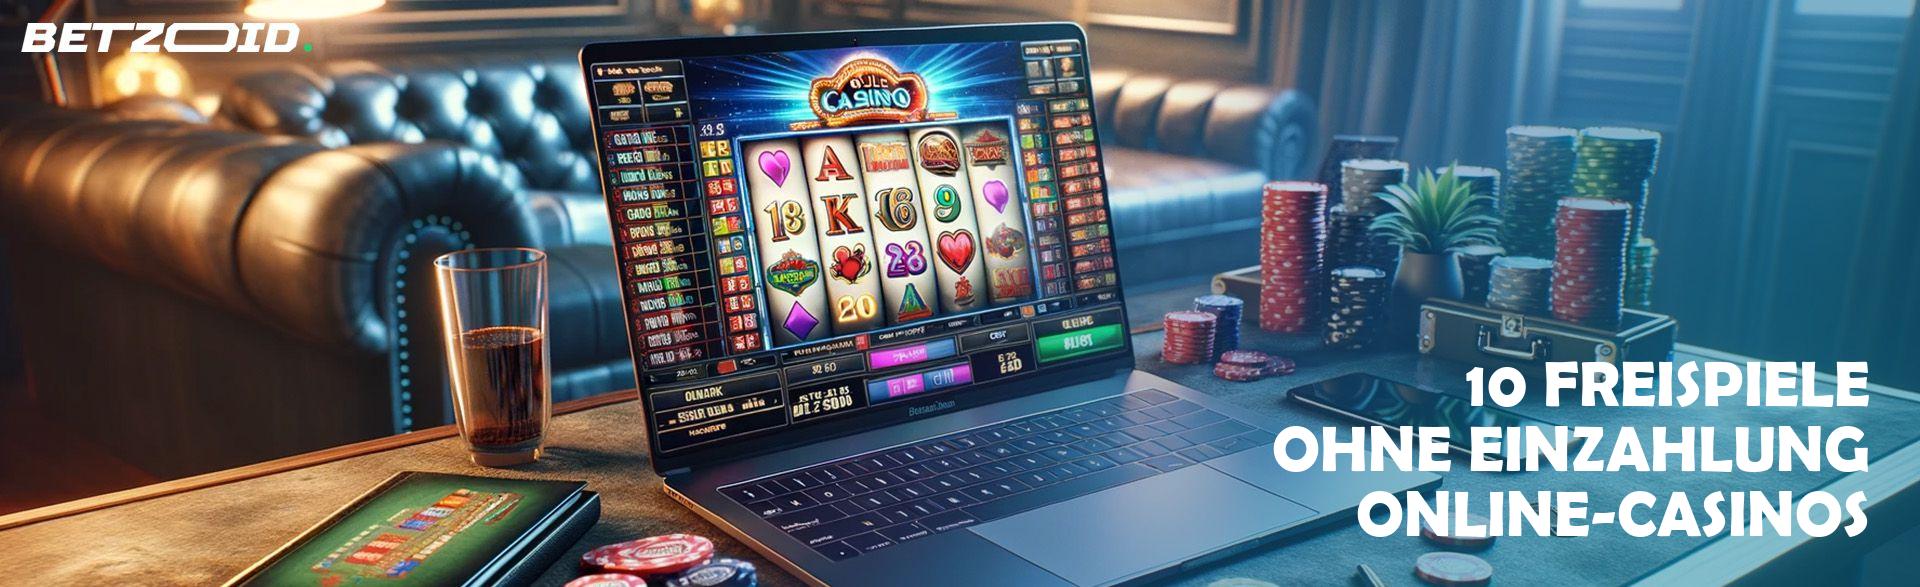 10 Freispiele ohne Einzahlung Online-Casinos.